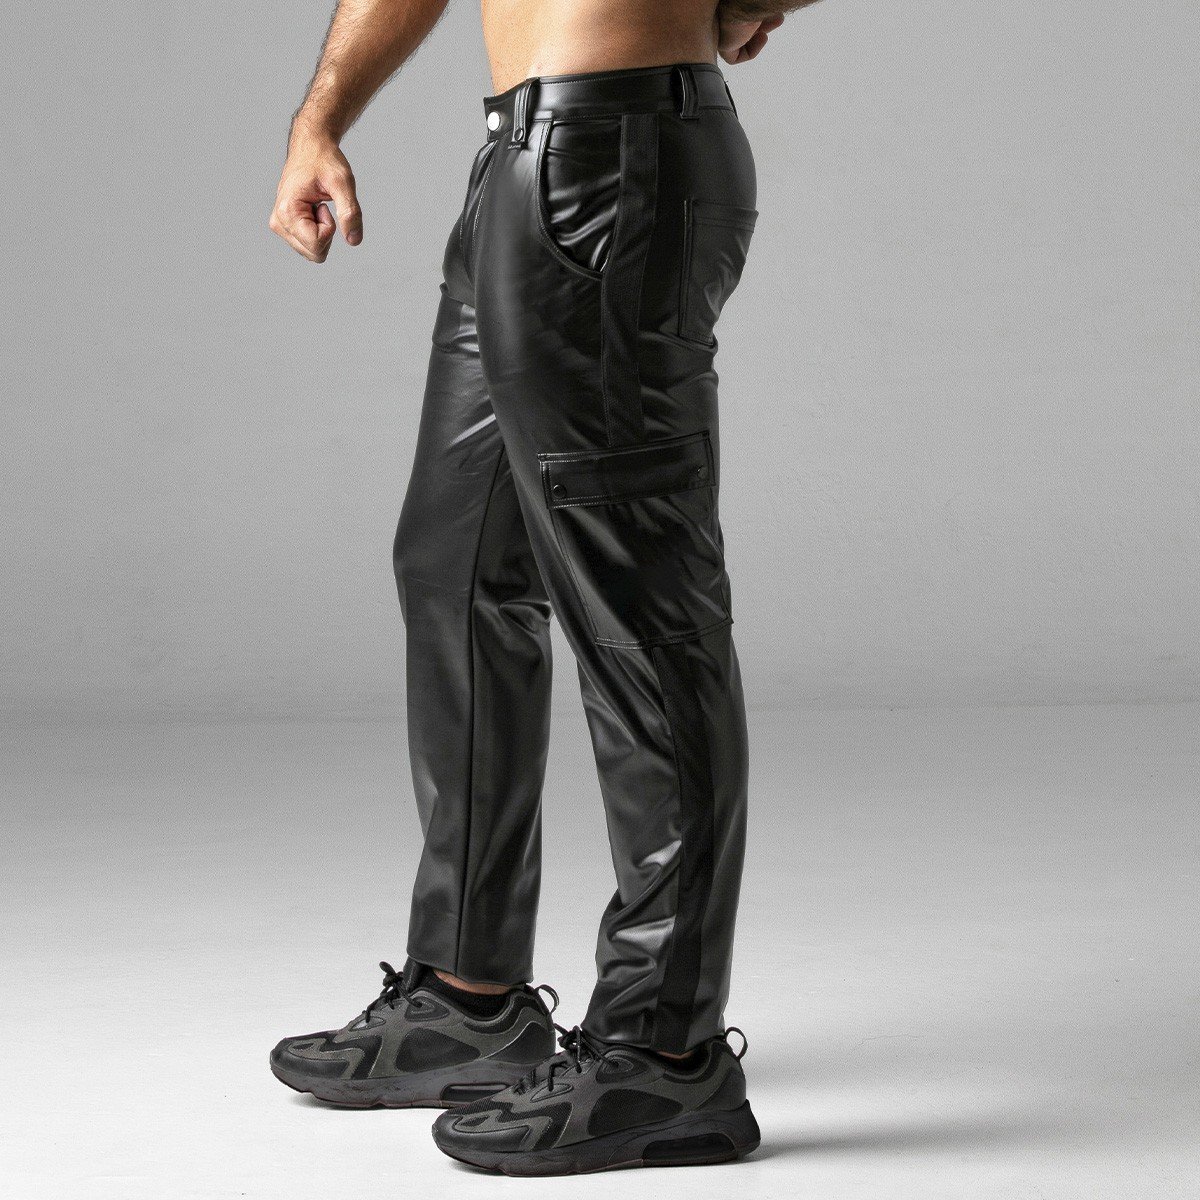 Kalhoty Locker Gear LK0965 Massive Rude Pant černé S, pánské kalhoty se zipem vzadu